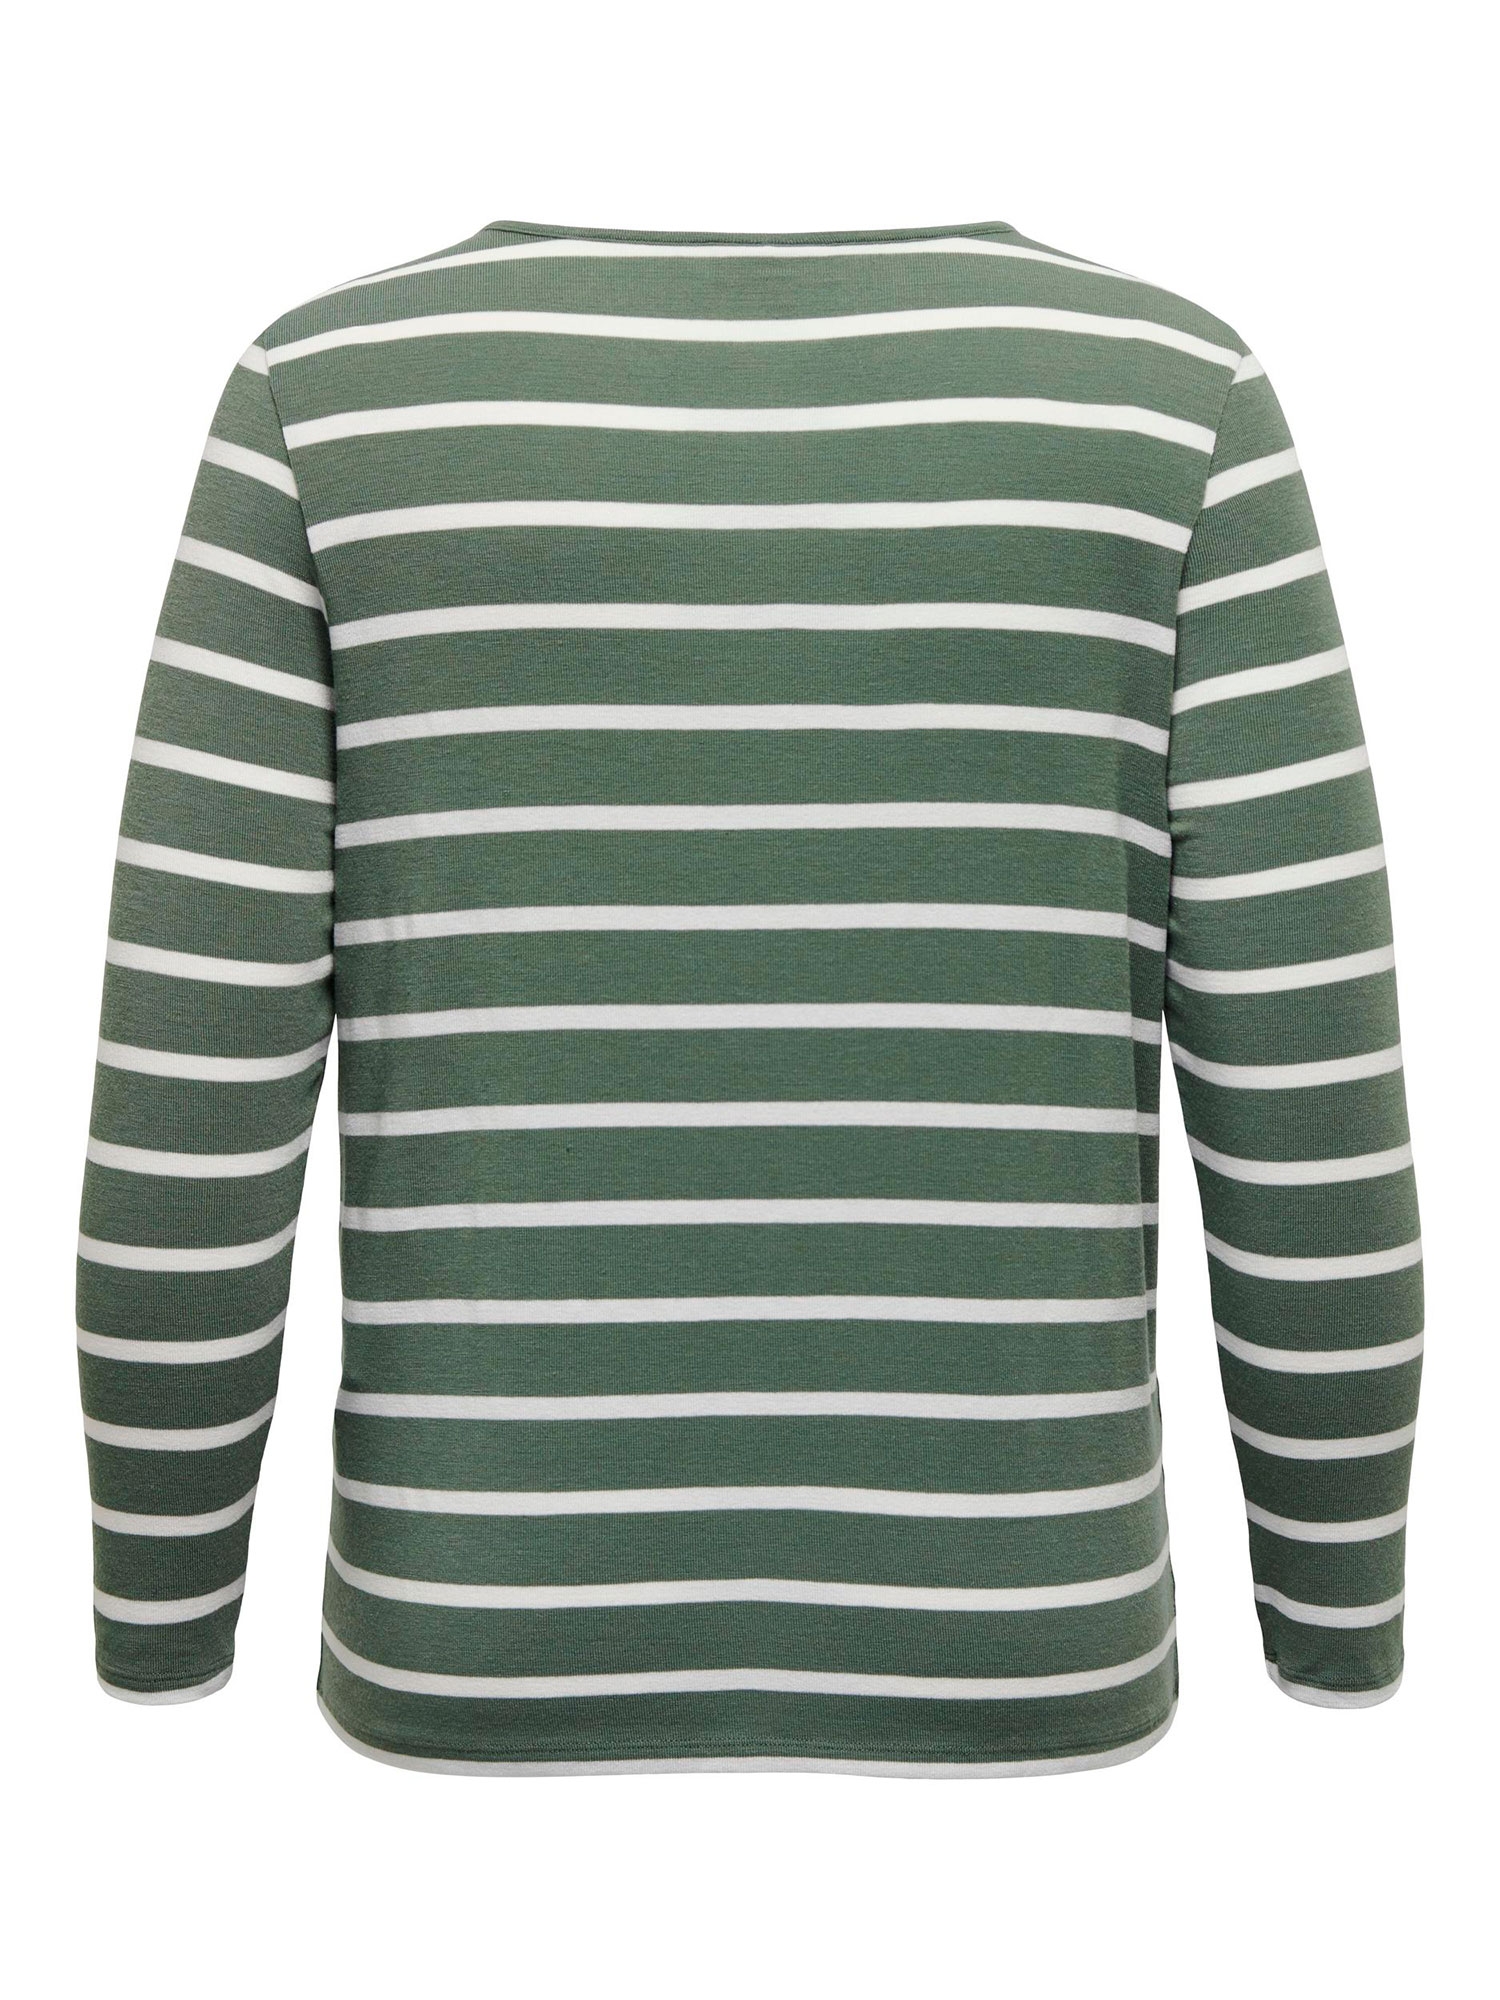 ELKE - Langærmet jersey bluse med grønne og hvide striber fra Only Carmakoma